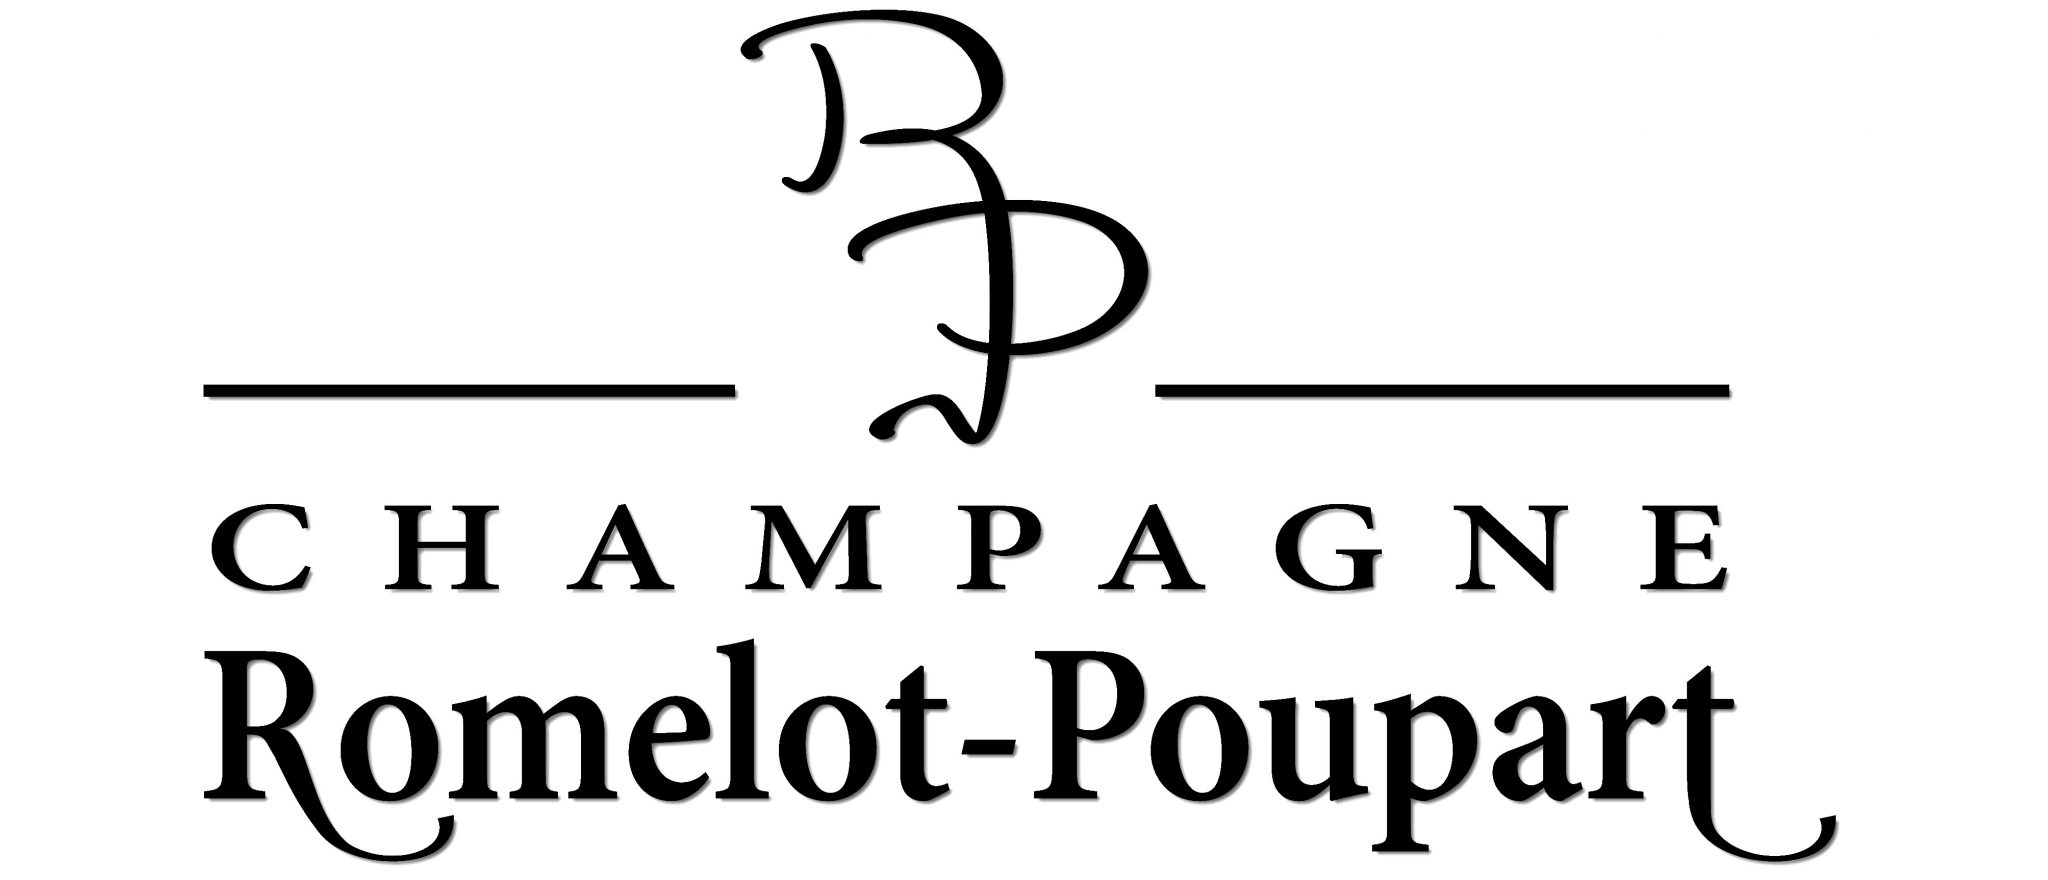 Champagne Romelot-Poupart